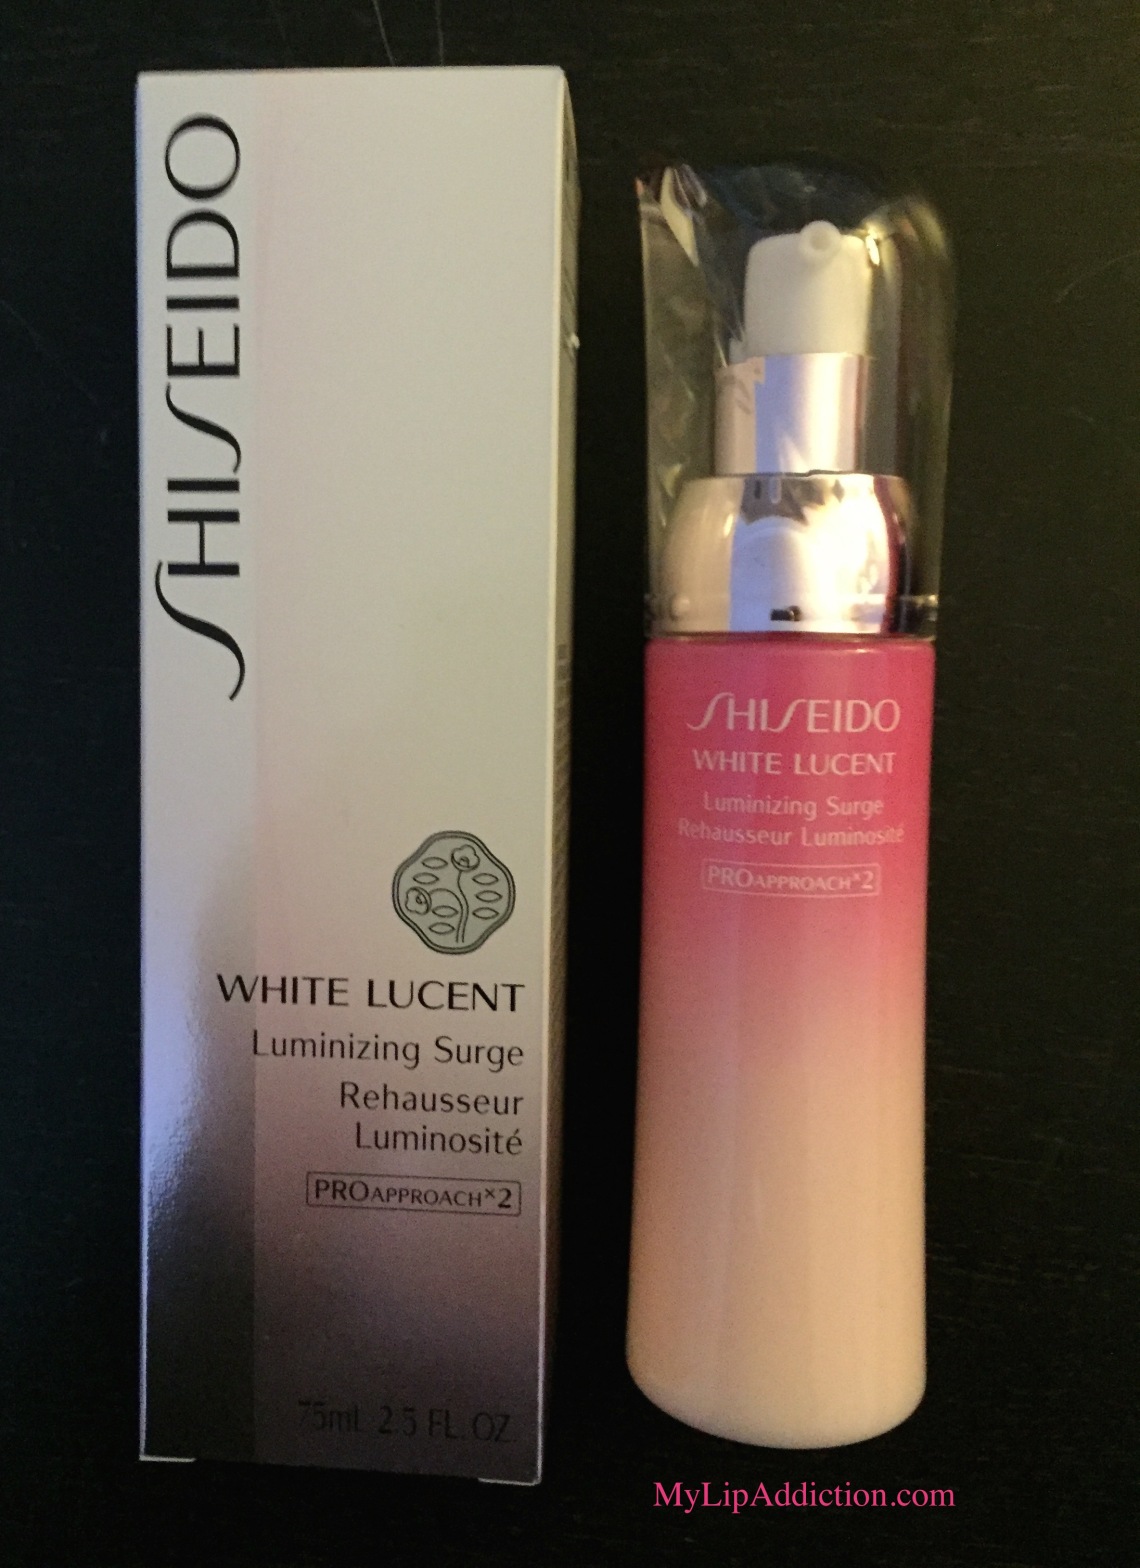 Shiseido White Lucent Luminizing Surge MyLipAddiction.com